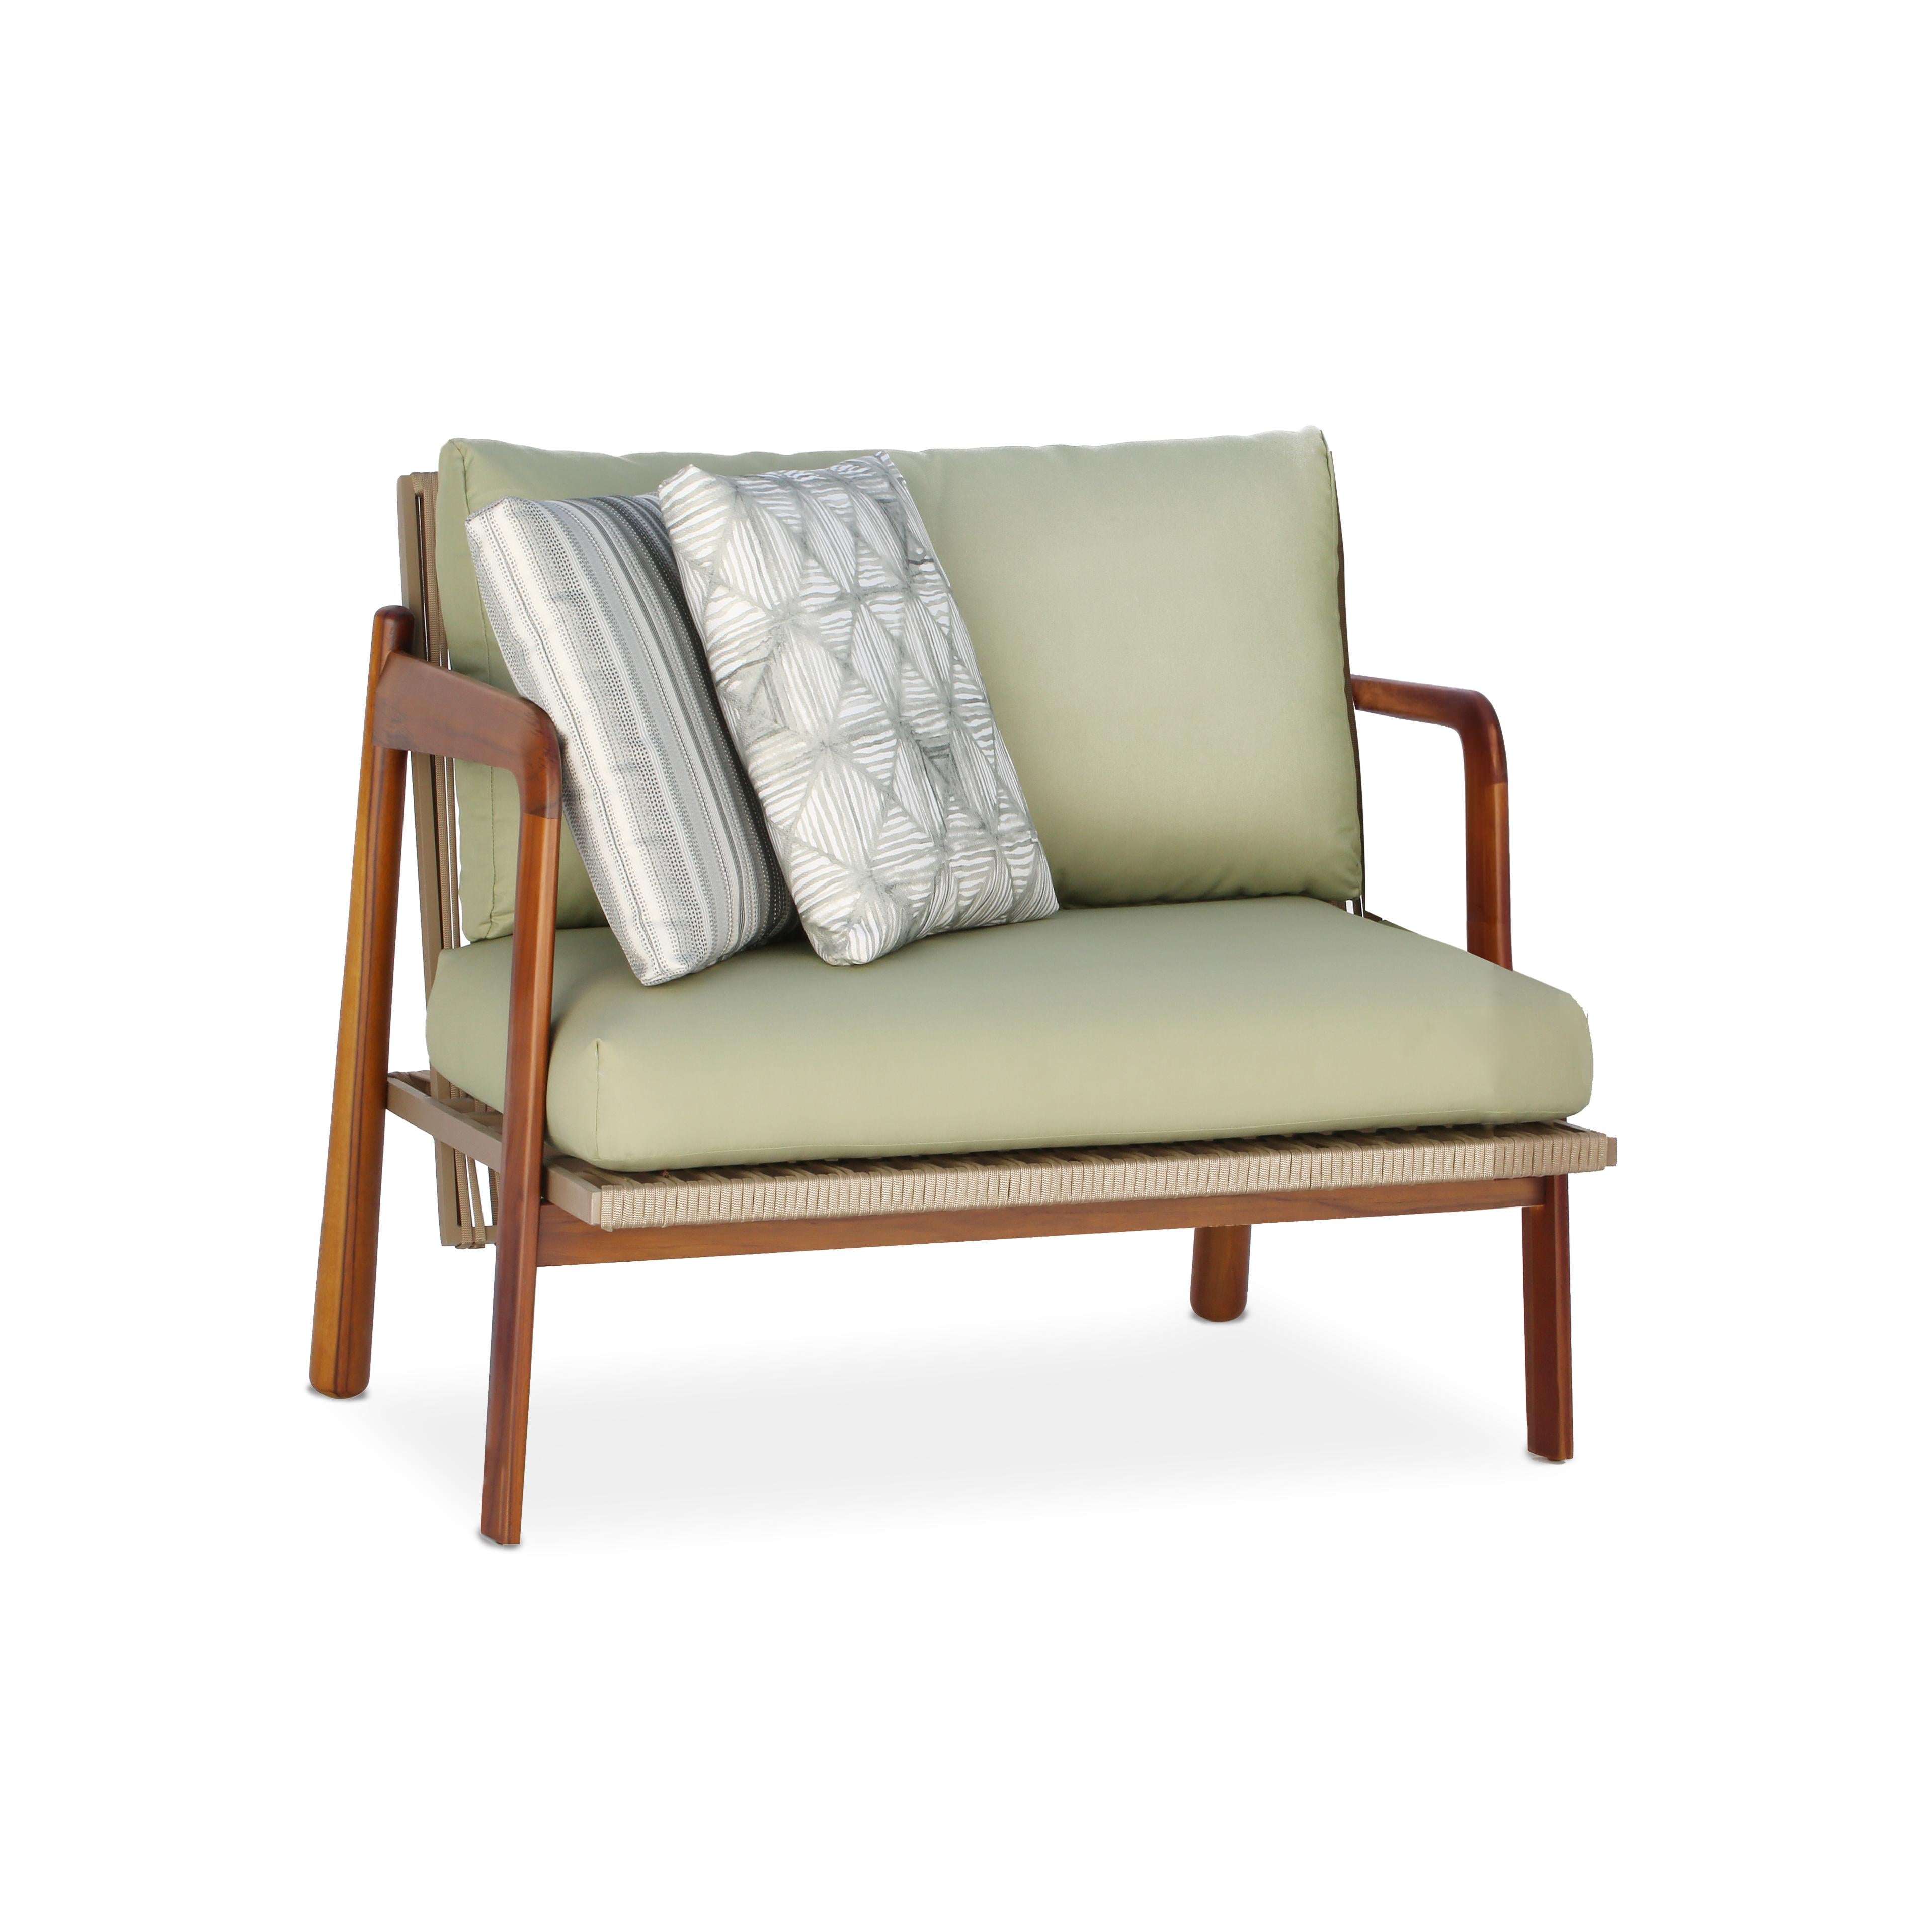 Design/One classique et sophistiqué, par le mélange des matériaux.
Le fauteuil Sancho peut être utilisé aussi bien à l'intérieur qu'à l'extérieur.
Sa structure est réalisée en teck naval naturel (bois brésilien reboisé). L'aluminium a un revolver